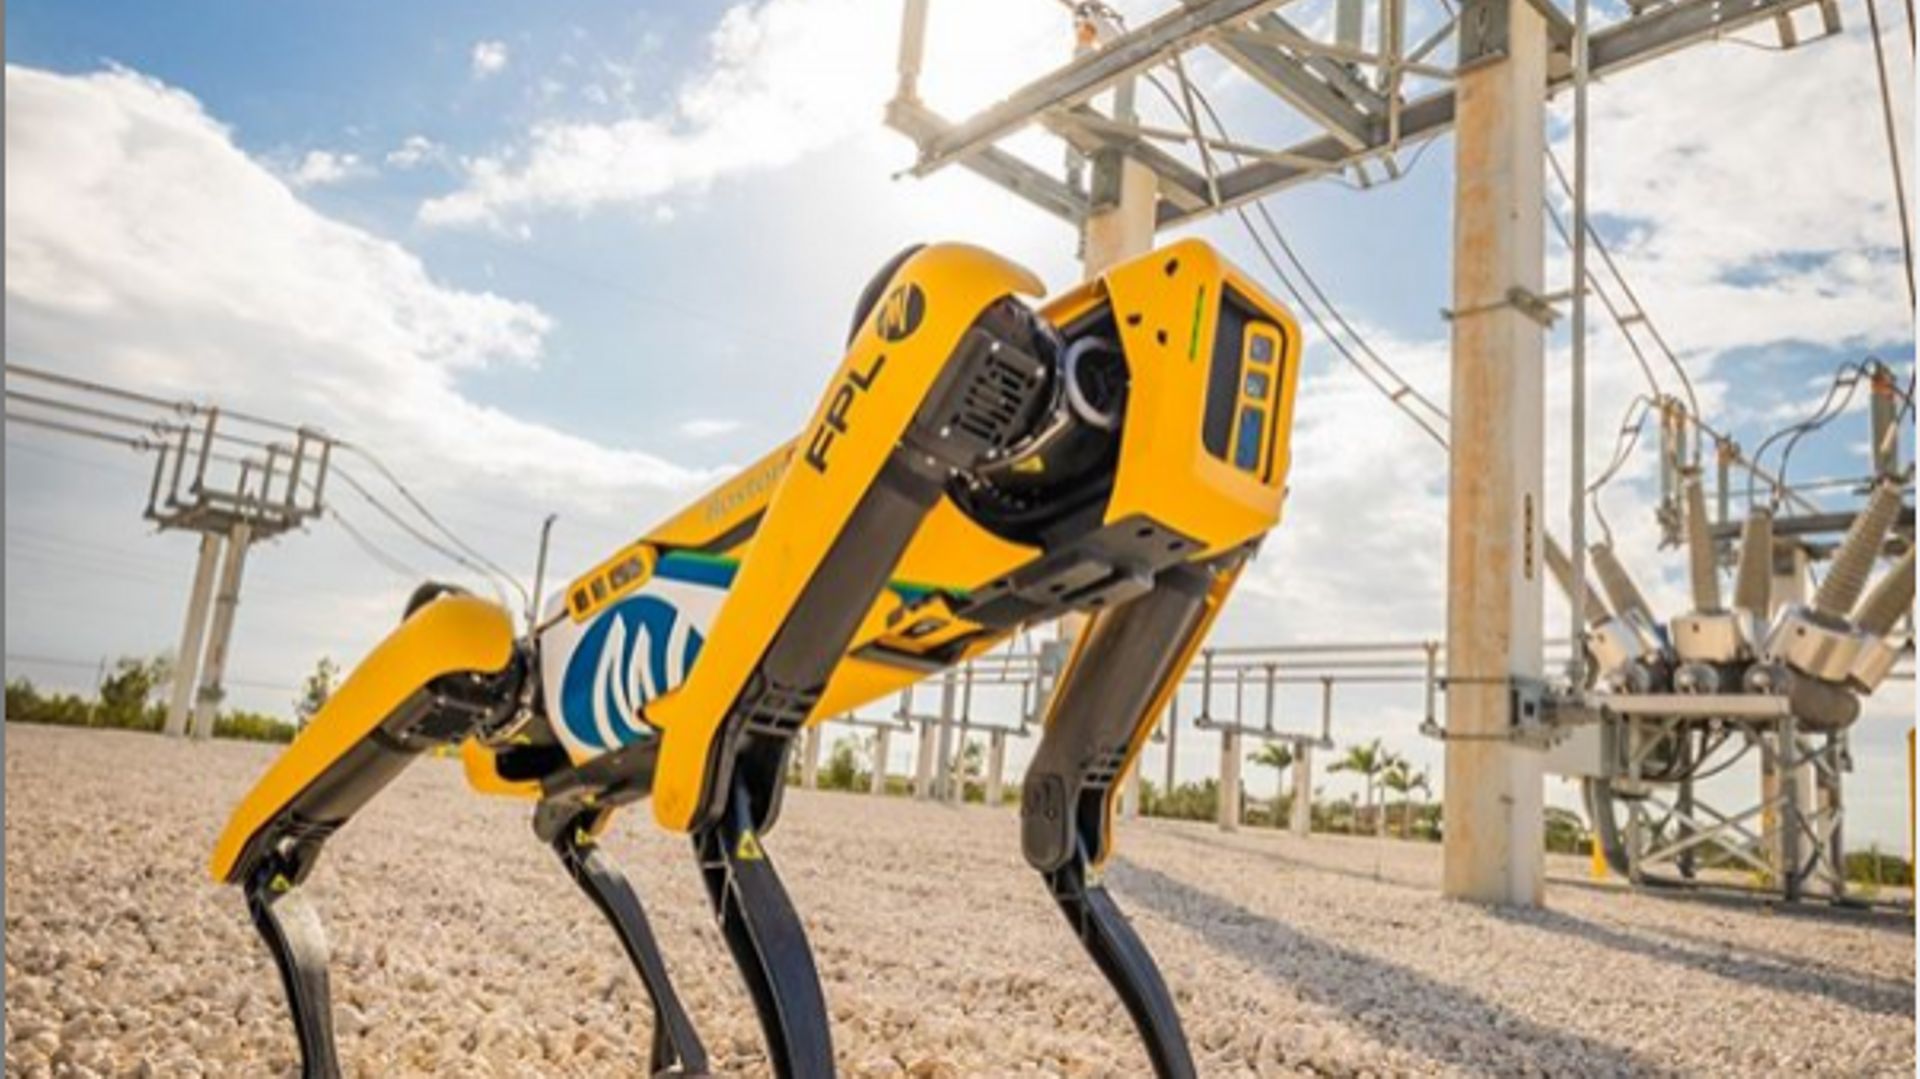 Des chiens robot arrivent sur les chantiers de construction afin d'aider les ouvrier et faire gagner du temps